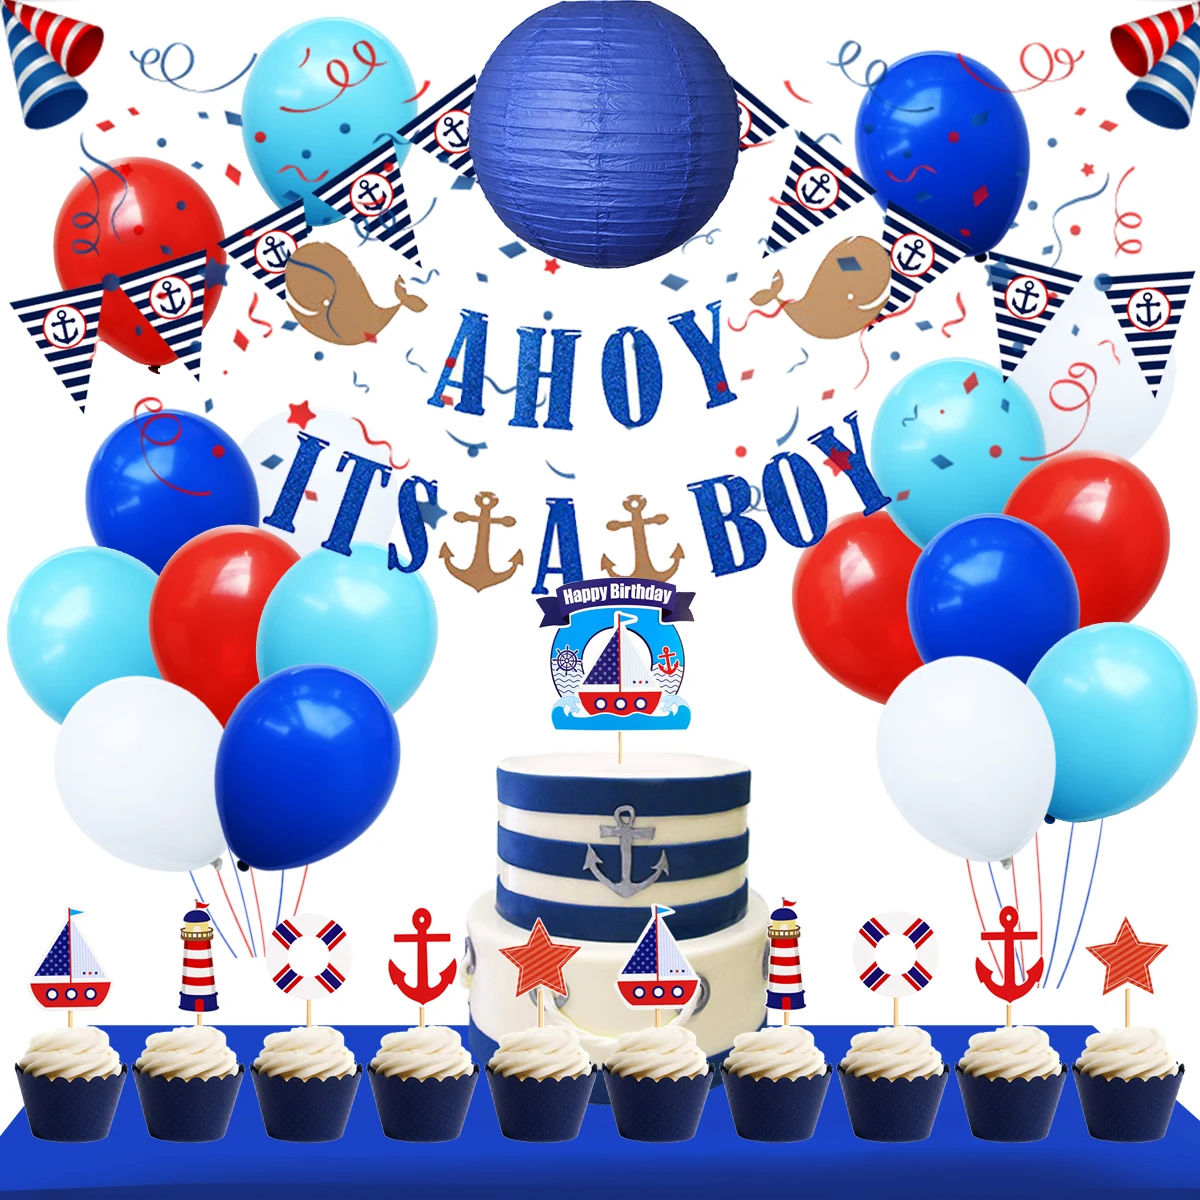 Wholesale Nicro Nautical Theme Birthday Party Supplies Ocean Party ...